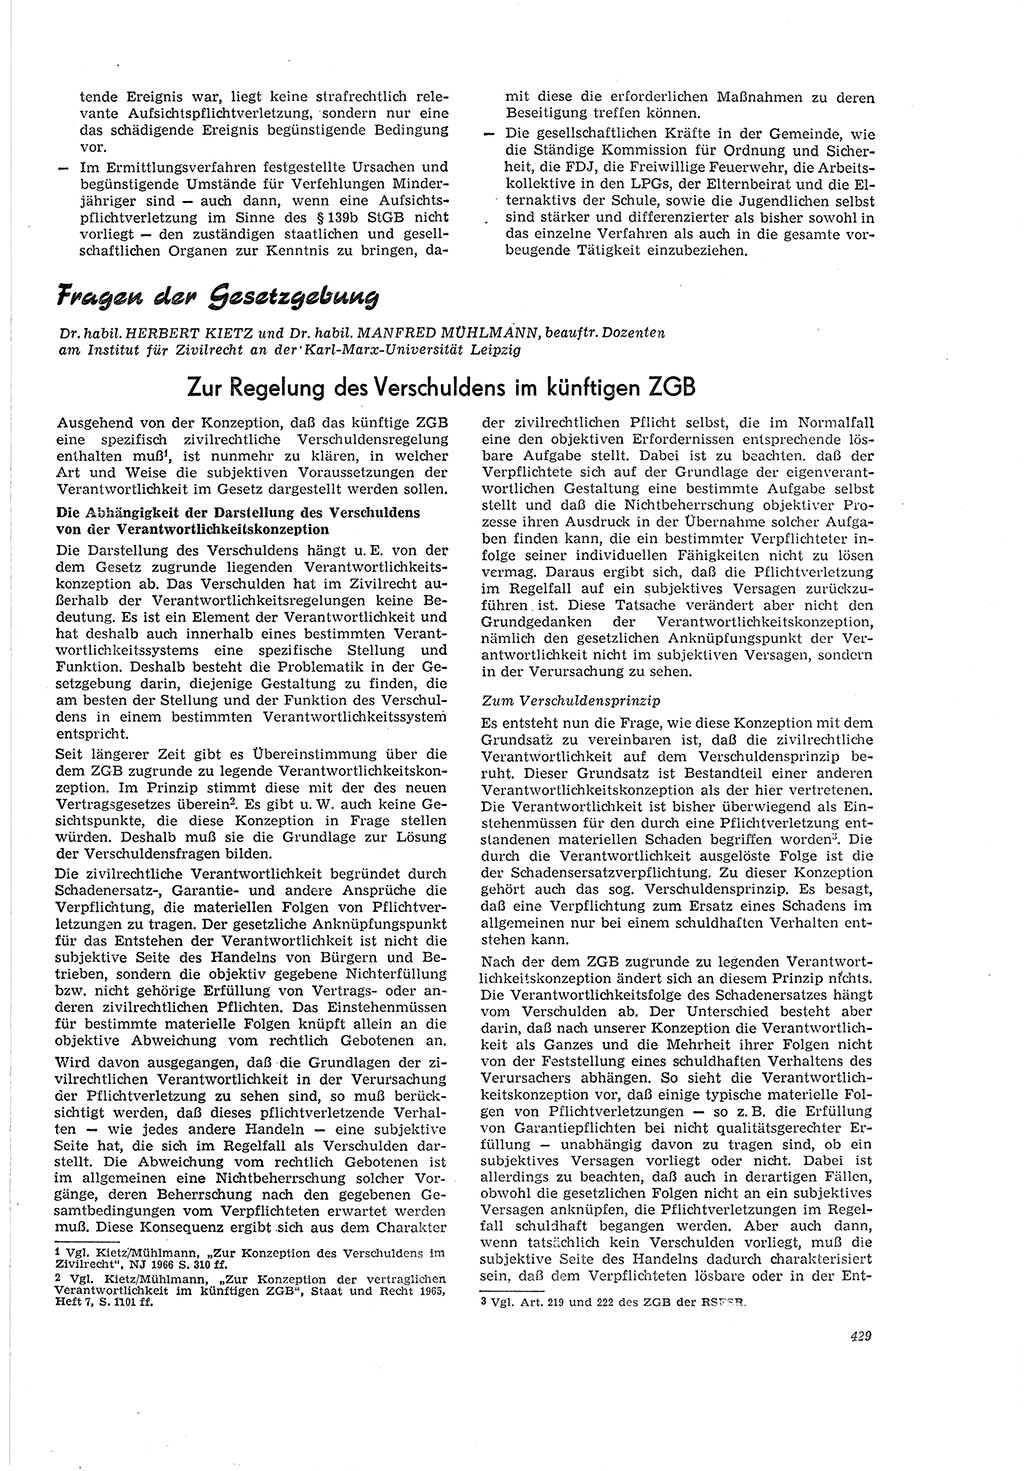 Neue Justiz (NJ), Zeitschrift für Recht und Rechtswissenschaft [Deutsche Demokratische Republik (DDR)], 20. Jahrgang 1966, Seite 429 (NJ DDR 1966, S. 429)